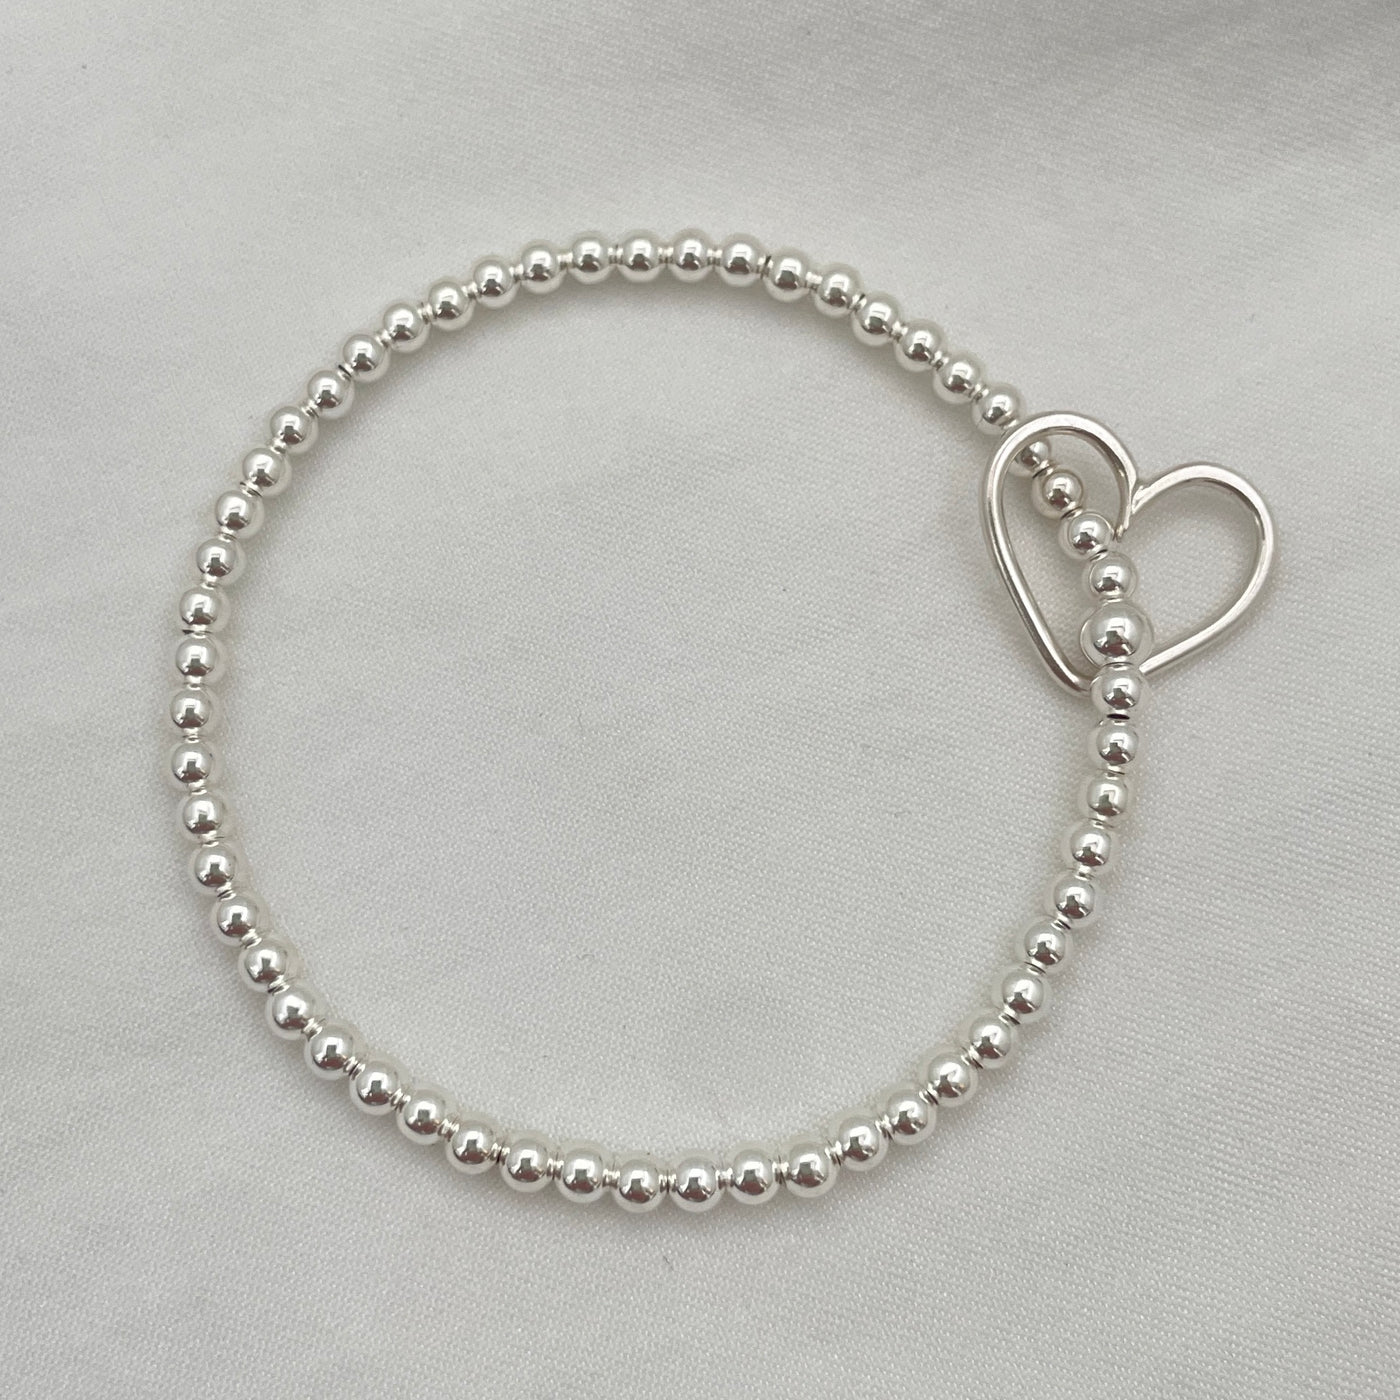 Open Heart Charm Bead Bracelet Sterling Silver